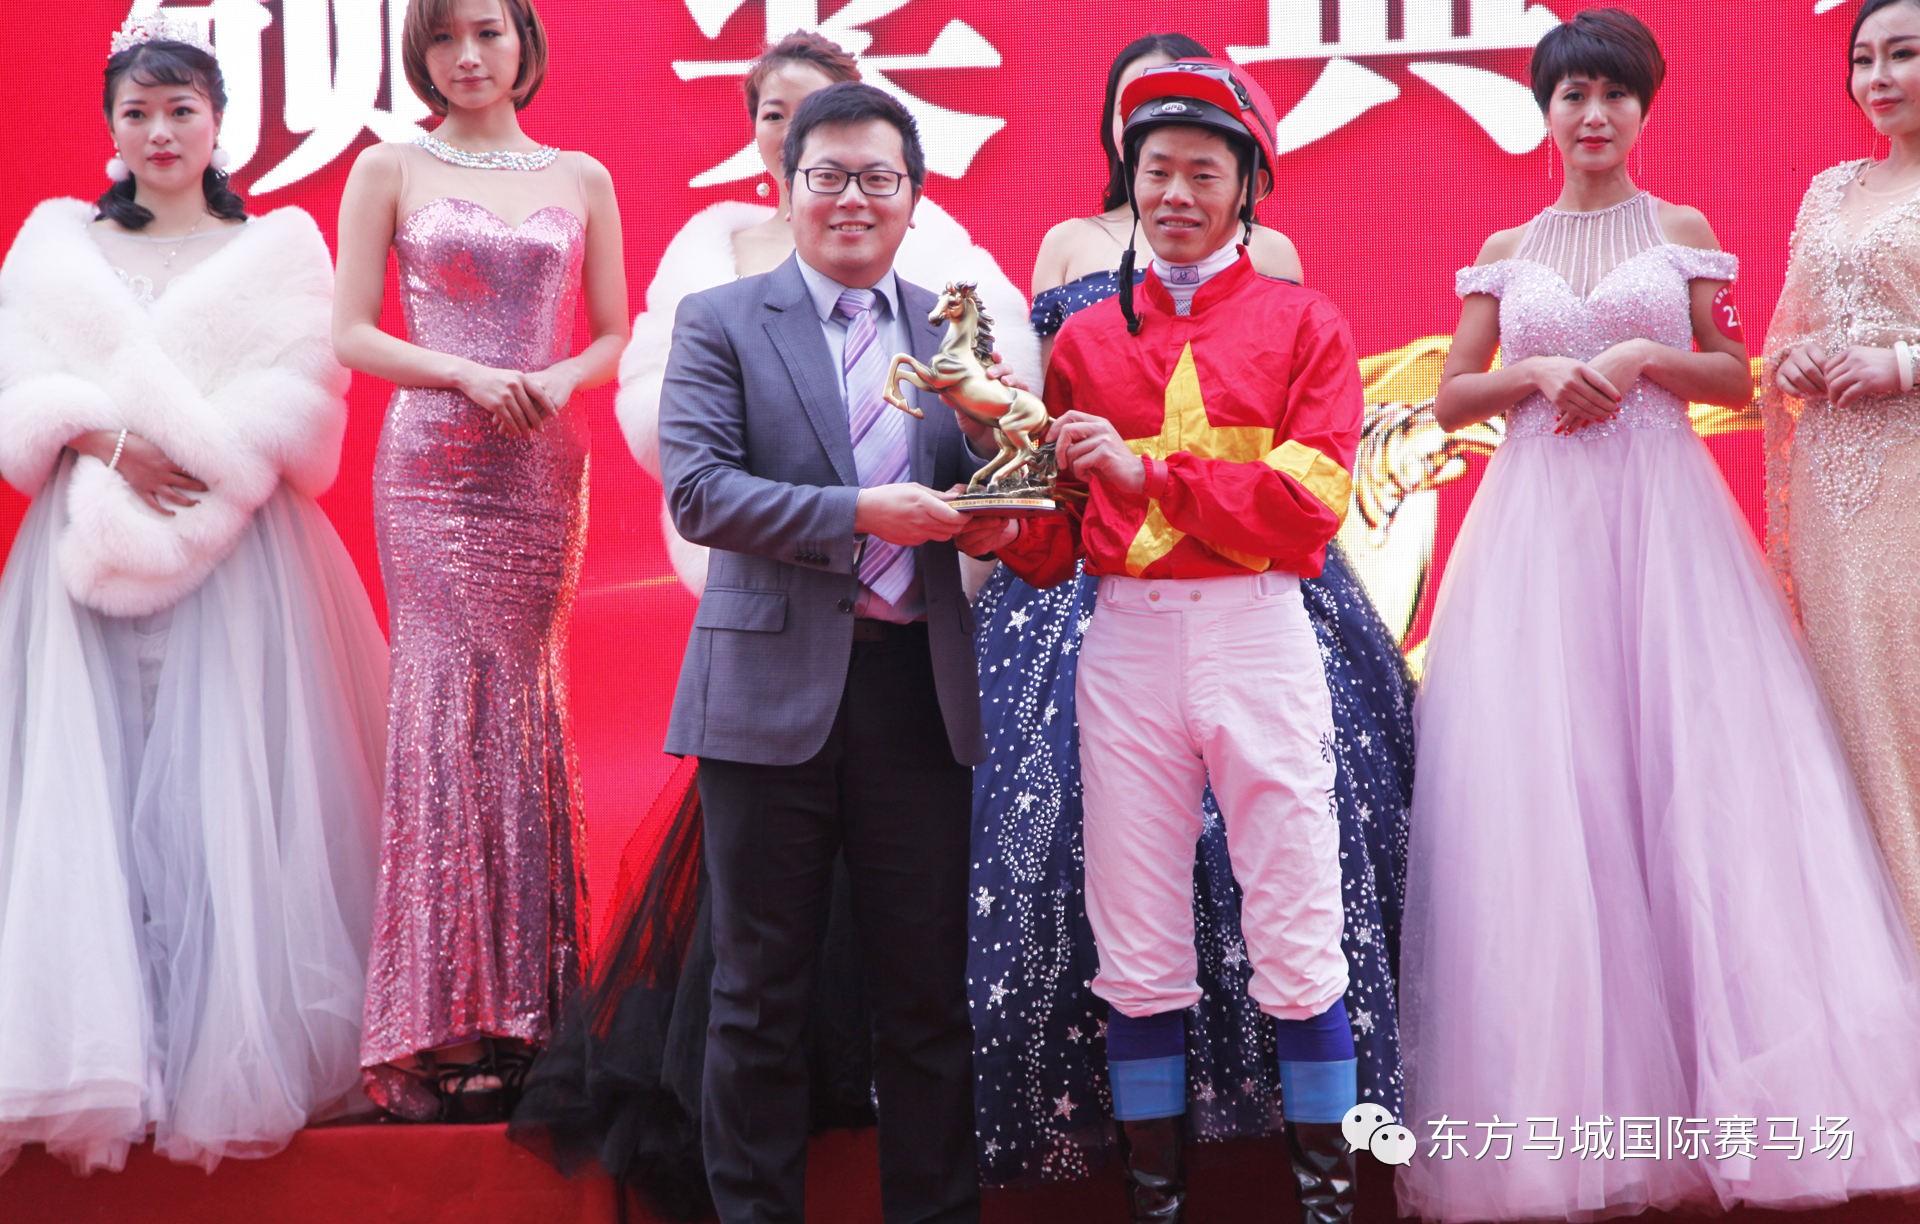 骑师陈成获得2017年度武汉赛马俱乐部"优秀骑师"称号,练马师刘学获得